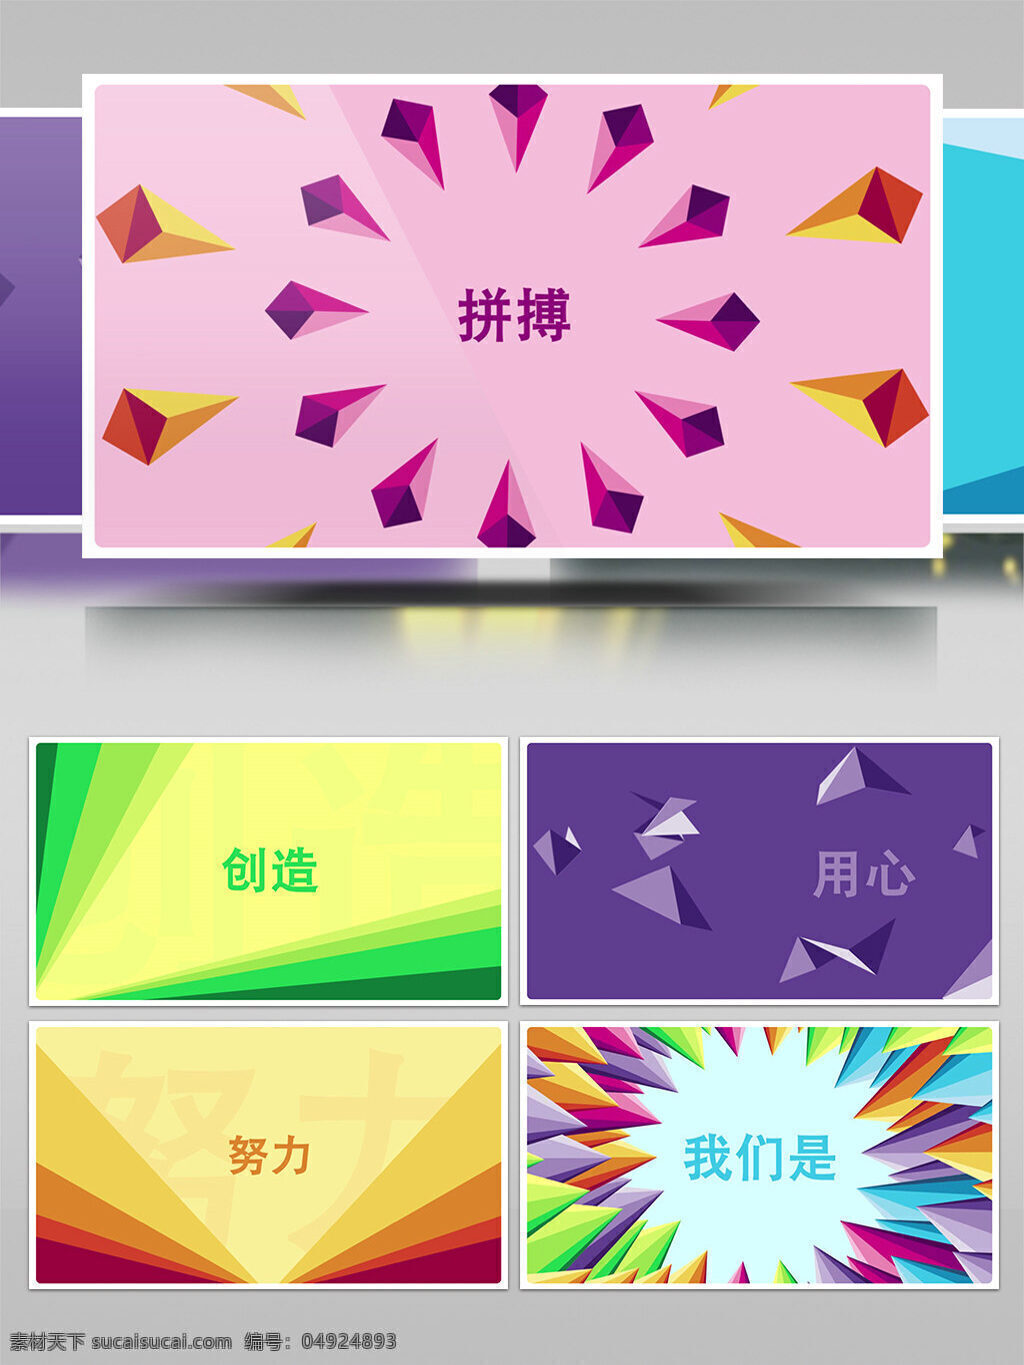 色 彩虹 折纸 文字 公司 宣传 logo 演绎 多色 多色彩虹 折纸文字 公司宣传 logo演绎 彩虹折纸 宣传logo